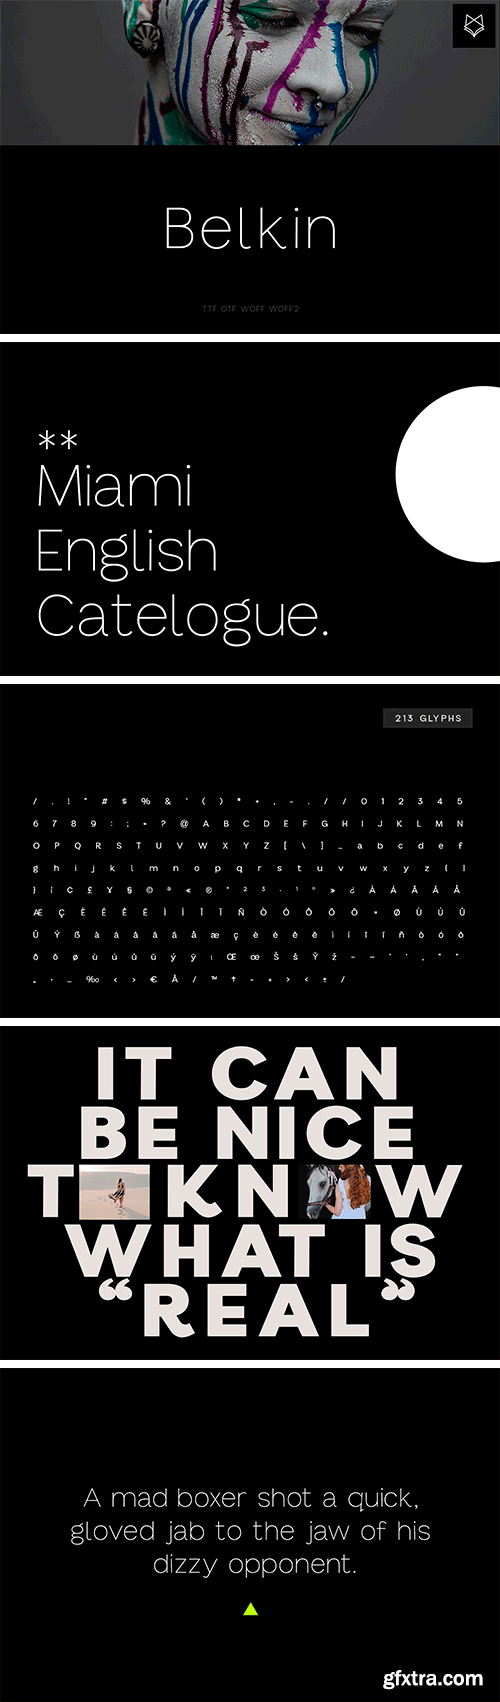 Belkin Display Typeface